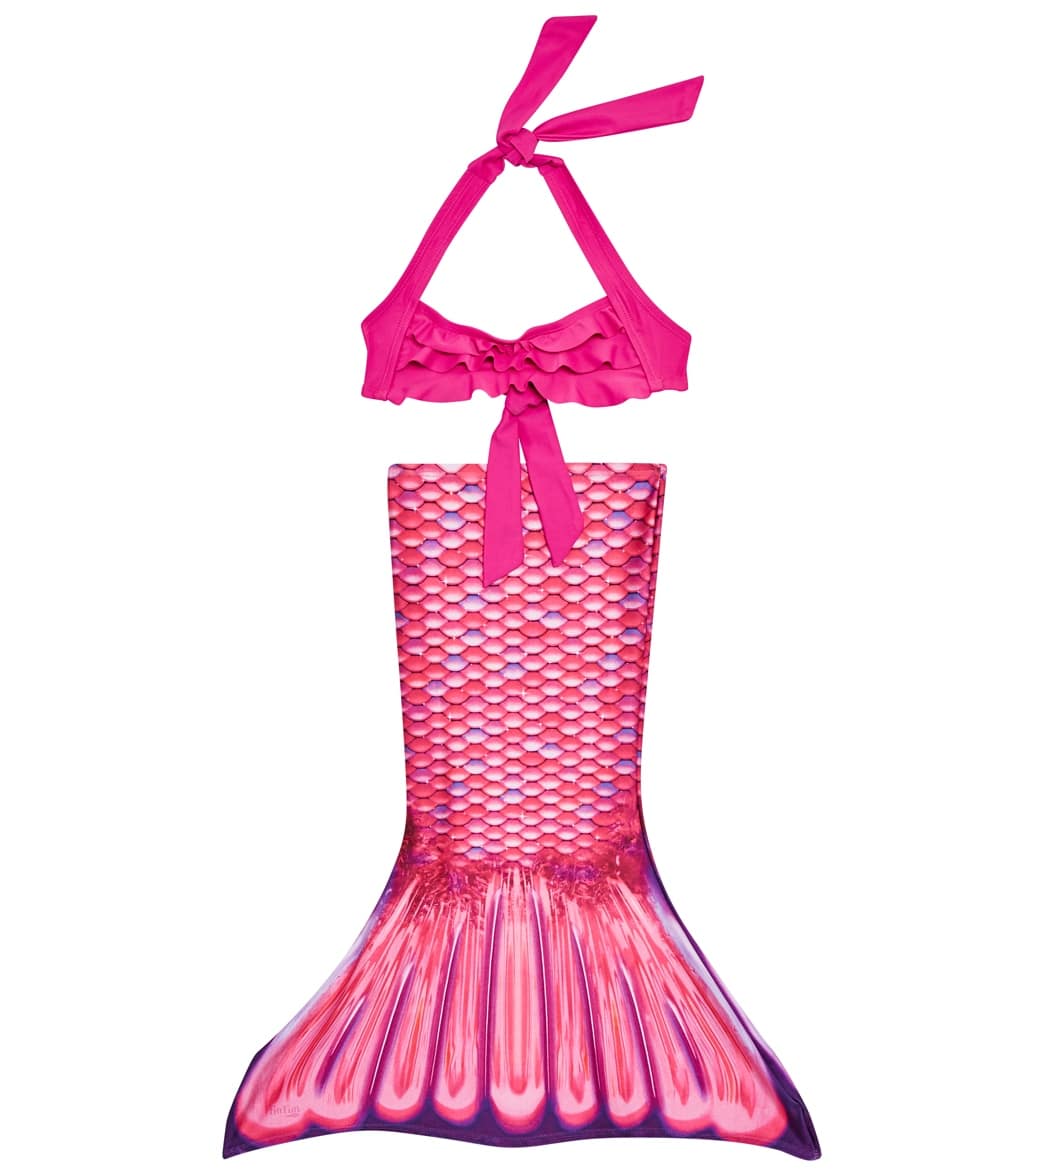 Fin Fun Malibu Pink Mermaid Tail Set (Toddler) at SwimOutlet.com - Free ...